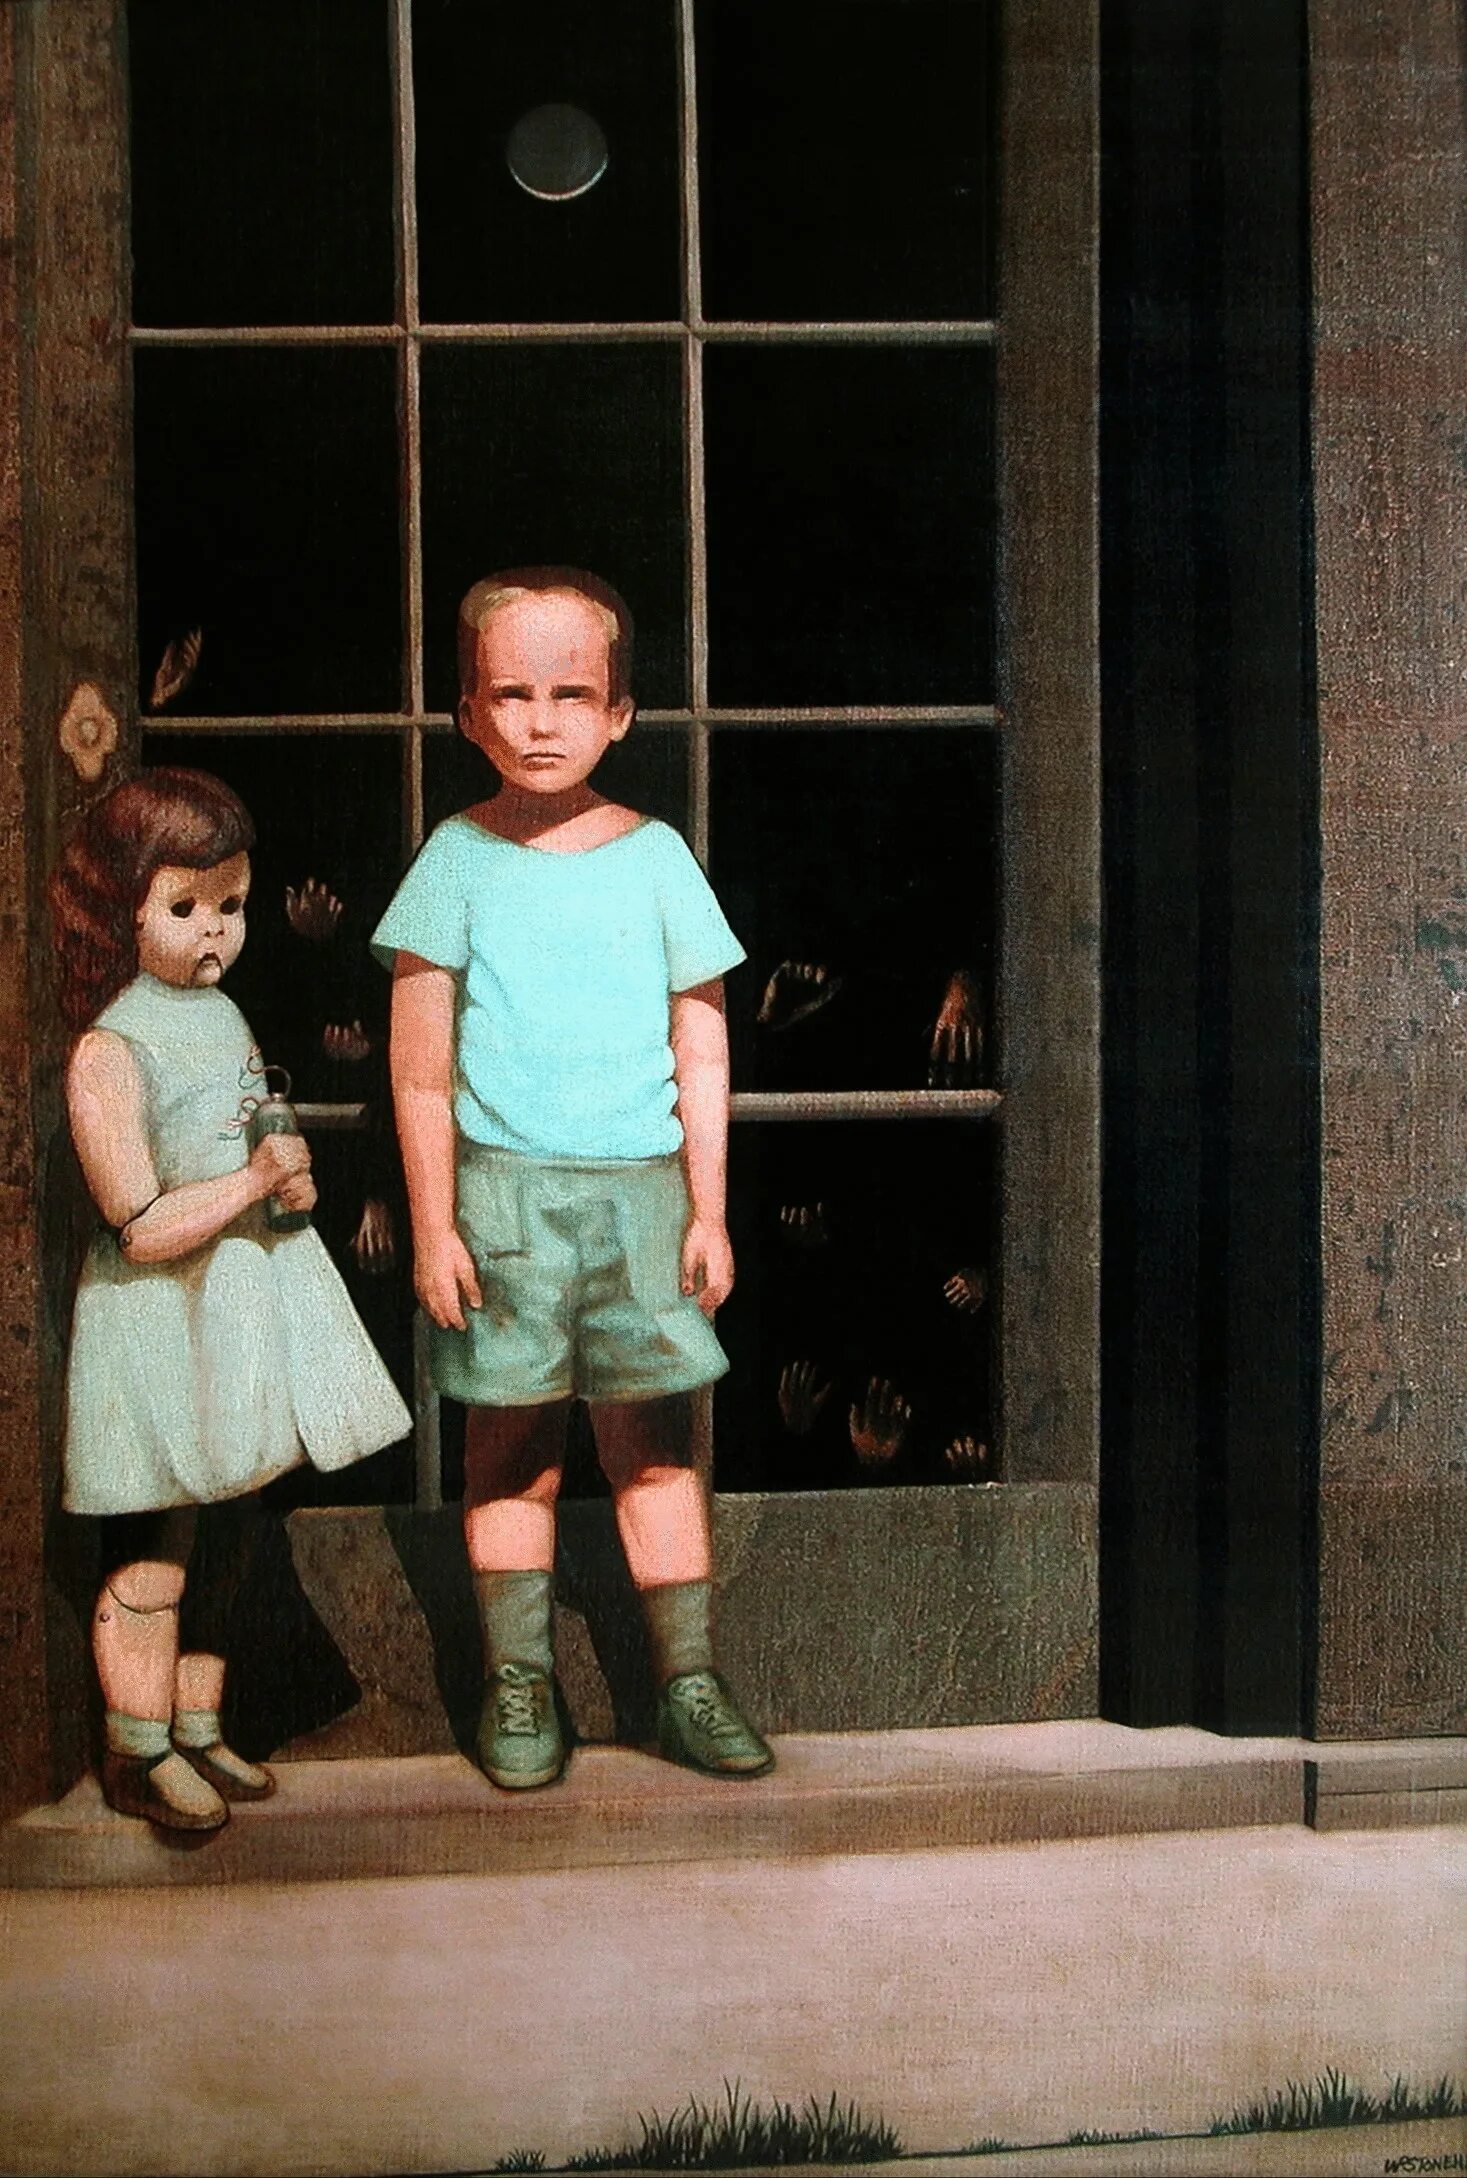 Картина мальчик с куклой на фоне окна. Билл Стоунхэм руки противятся ему 1972. Руки сопротивляются ему Билл Стоунхэм. Билл Стоунхэм Проклятая картина. Билл Стоунхем "руки, сопротивляющиеся ему"..